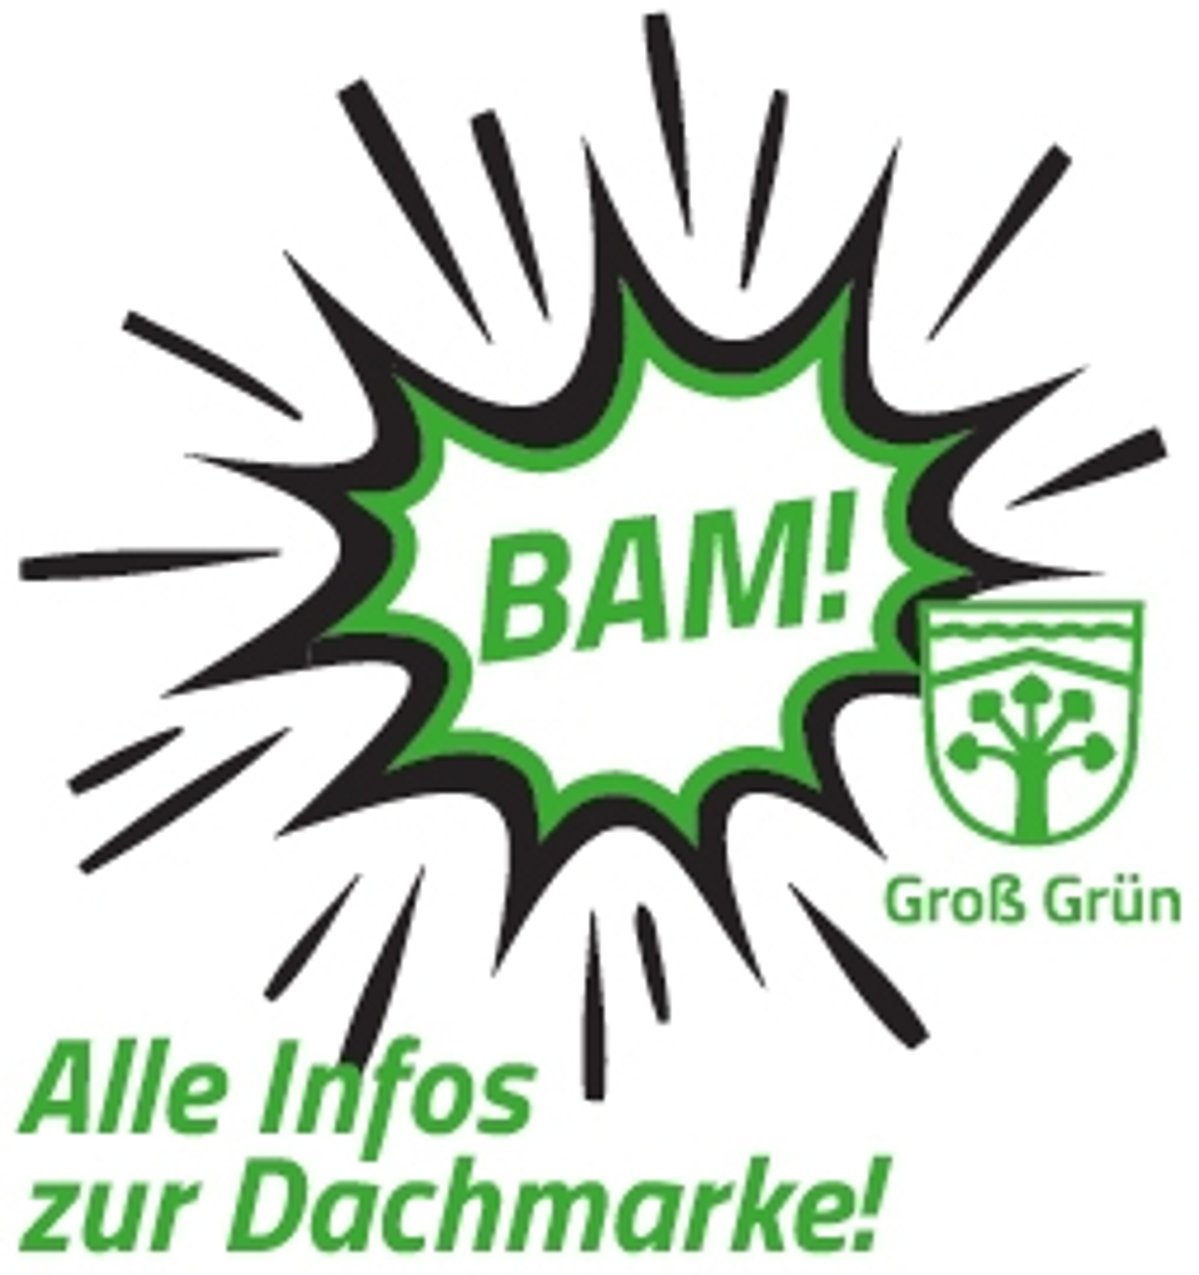 Eine schwarz grüne Sprechblase in der "BAM!" steht. Neben der Sprechblase das "Groß Grün" Logo und da drunter steht in grüner Schrift "Alle Infos zur Dachmarke".